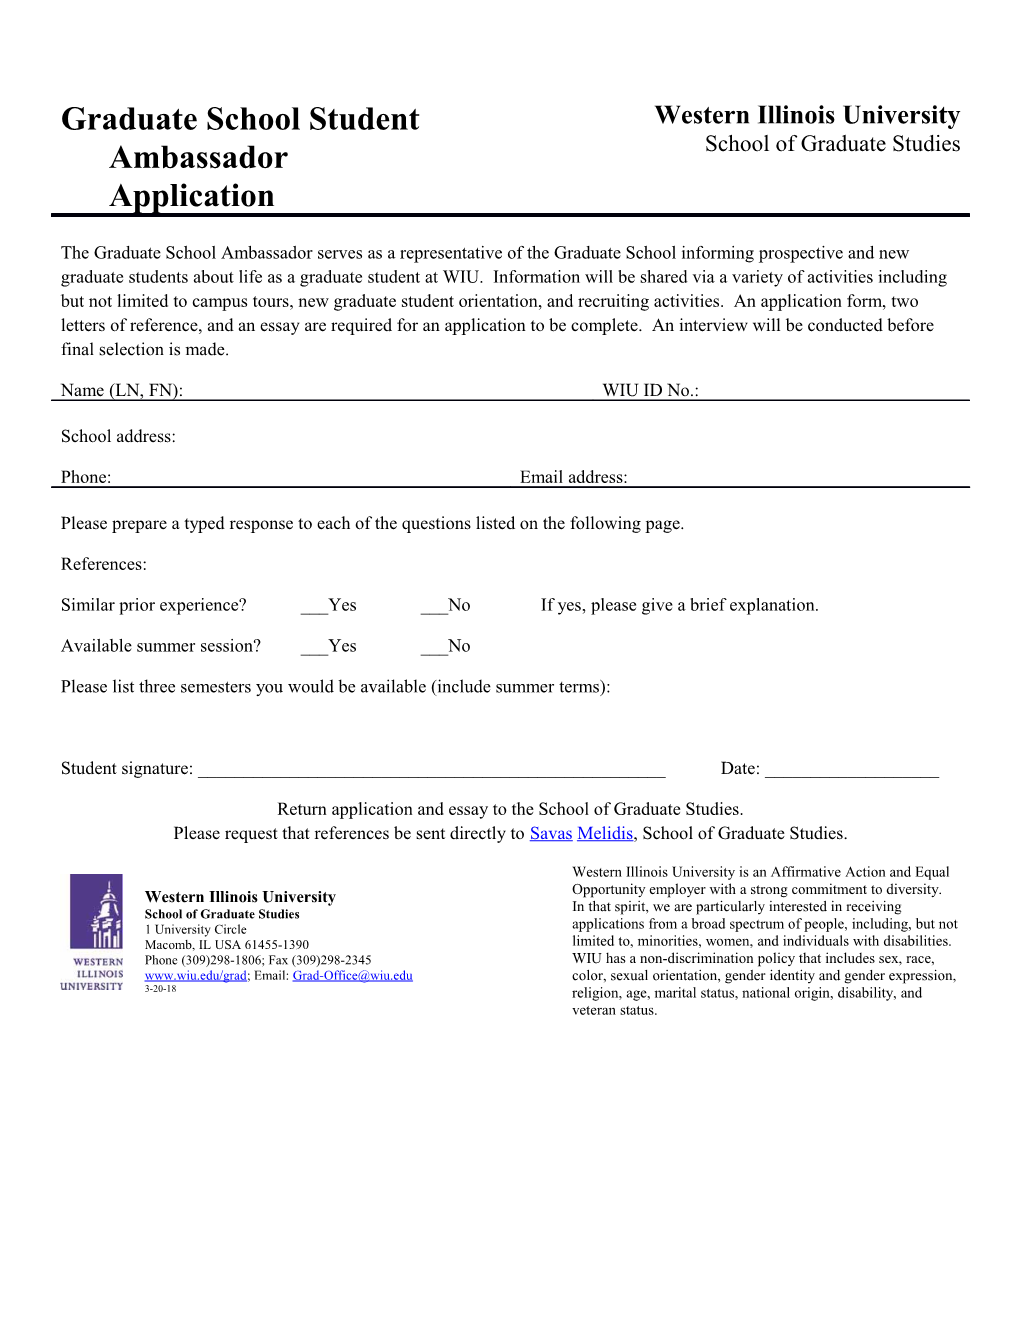 Graduate School Student Ambassador Application